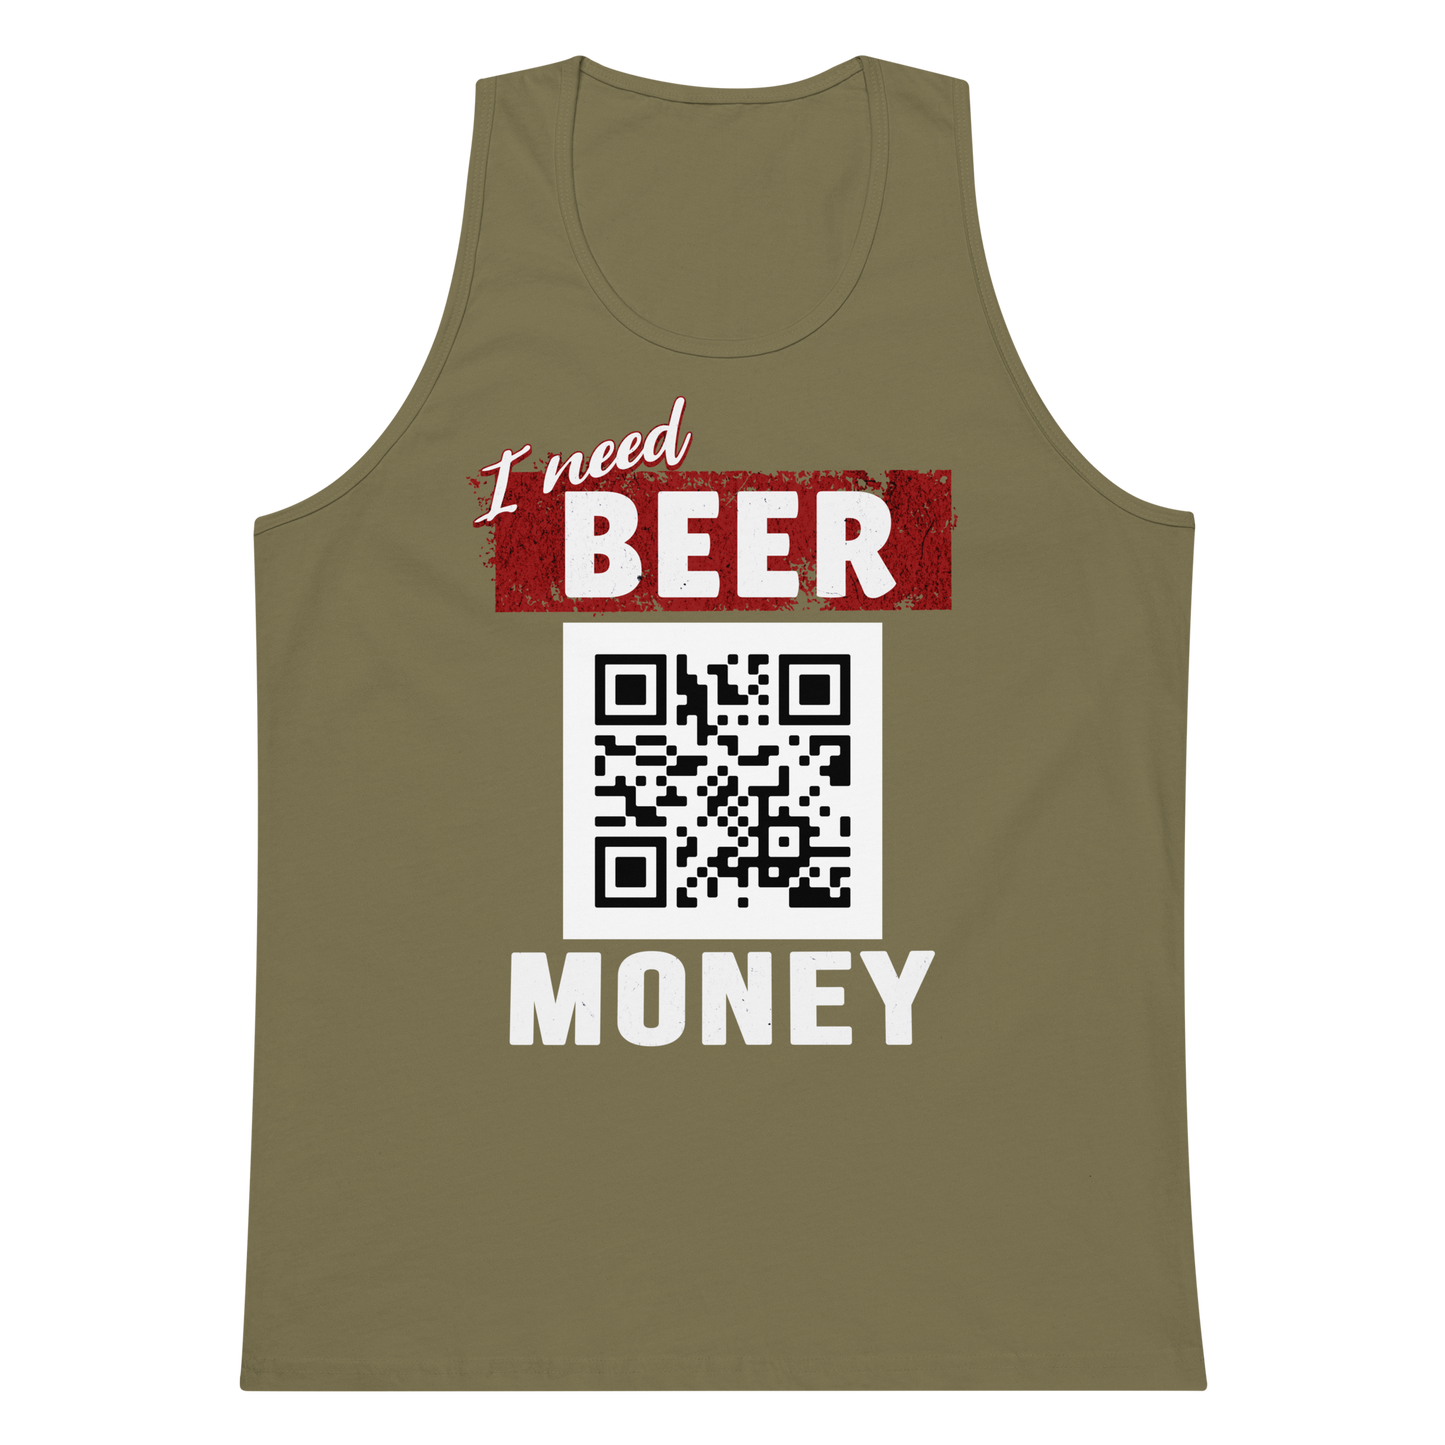 I Need Beer Money Men's Tank Top - Personalizable